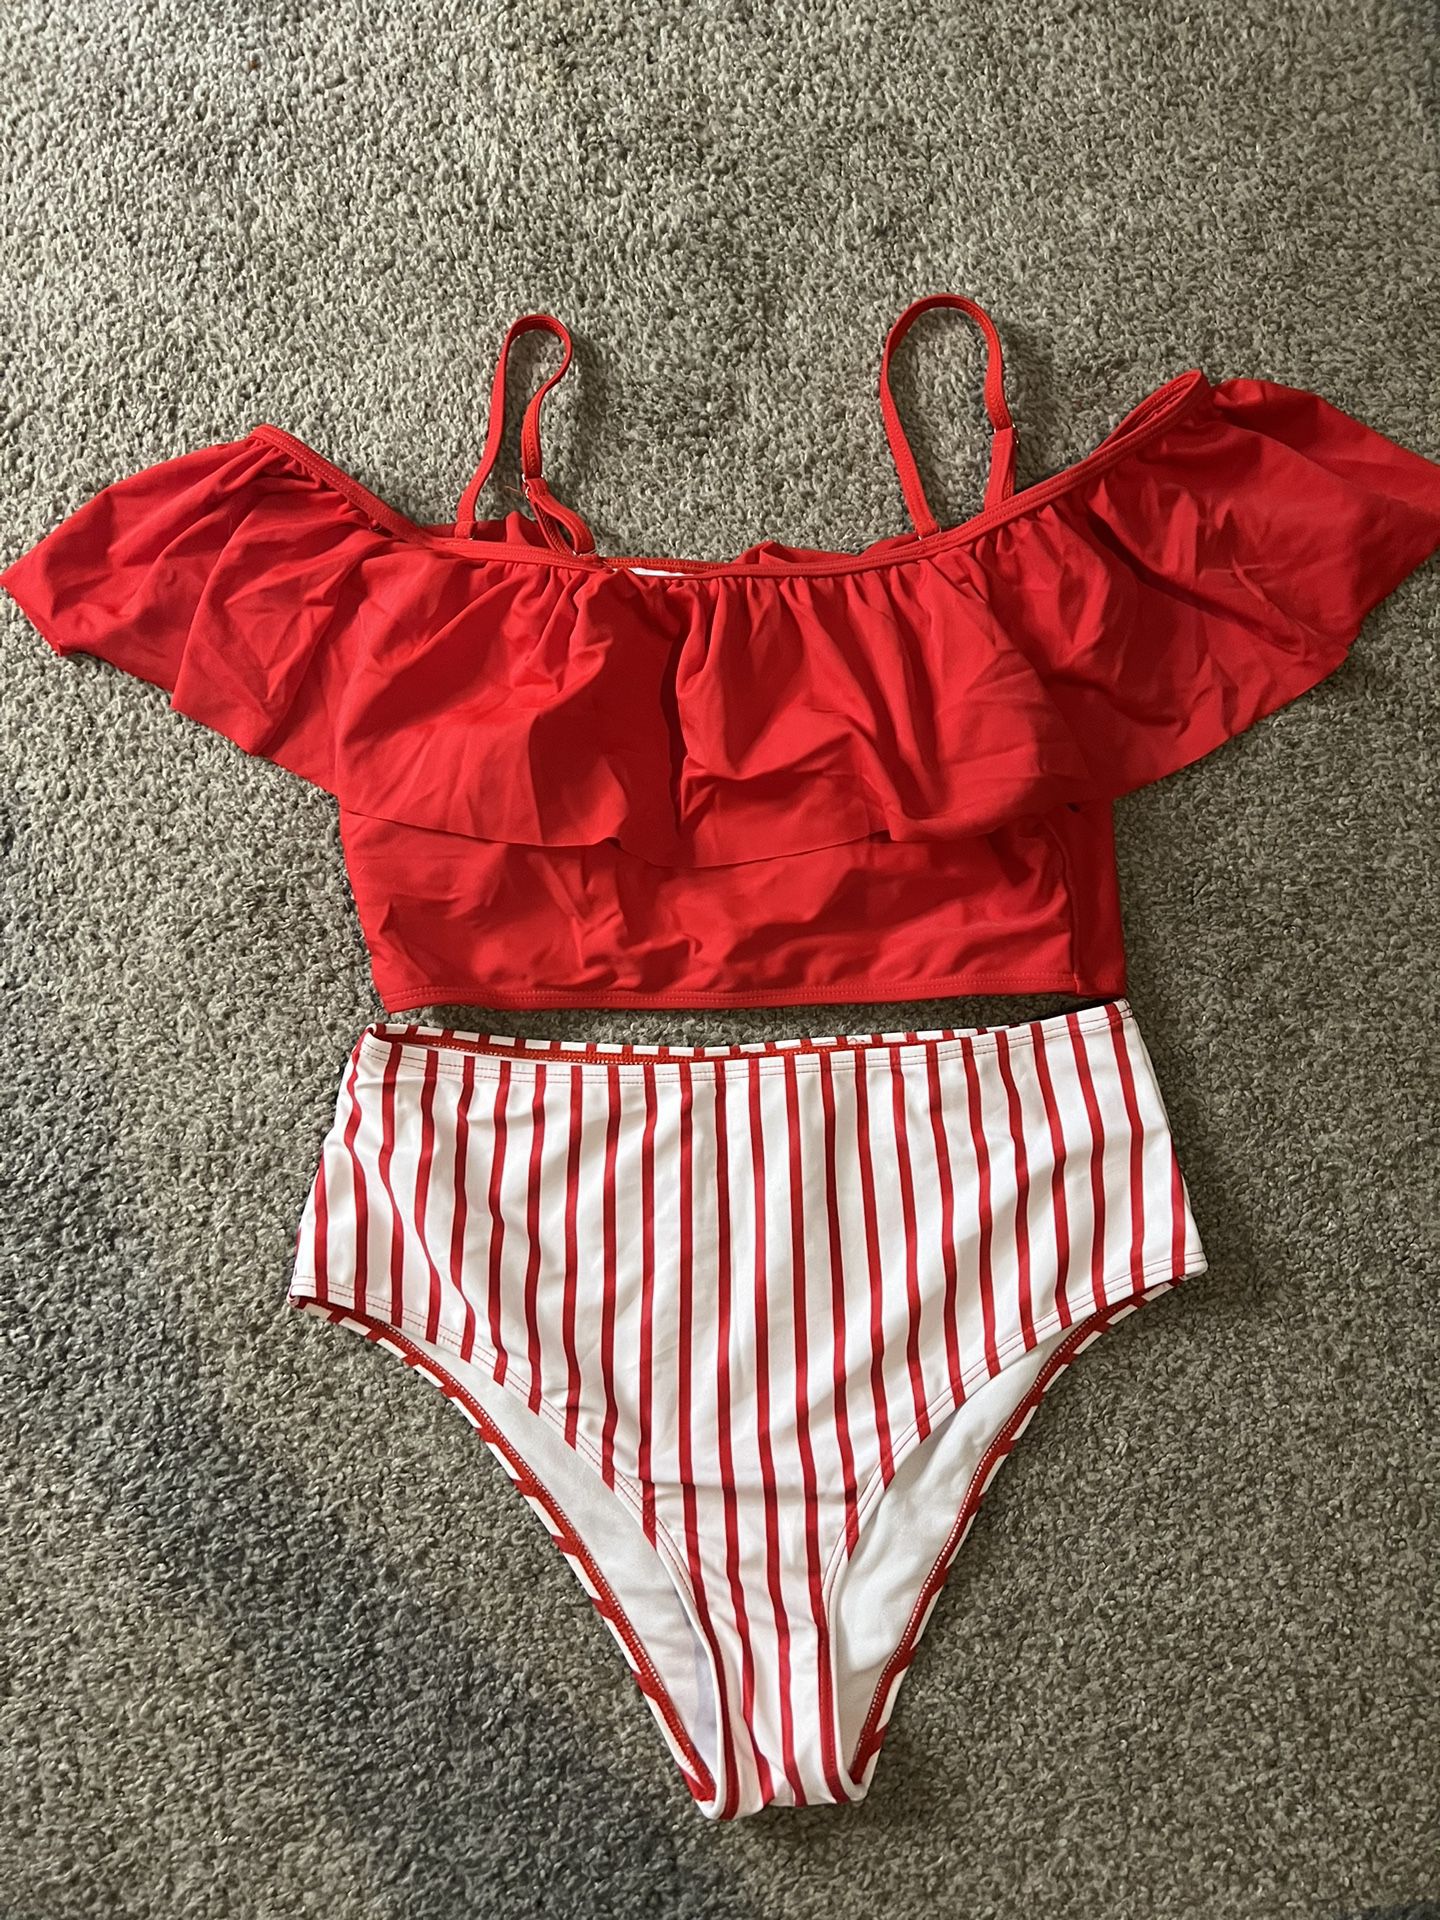 Size Large Red Bikini 